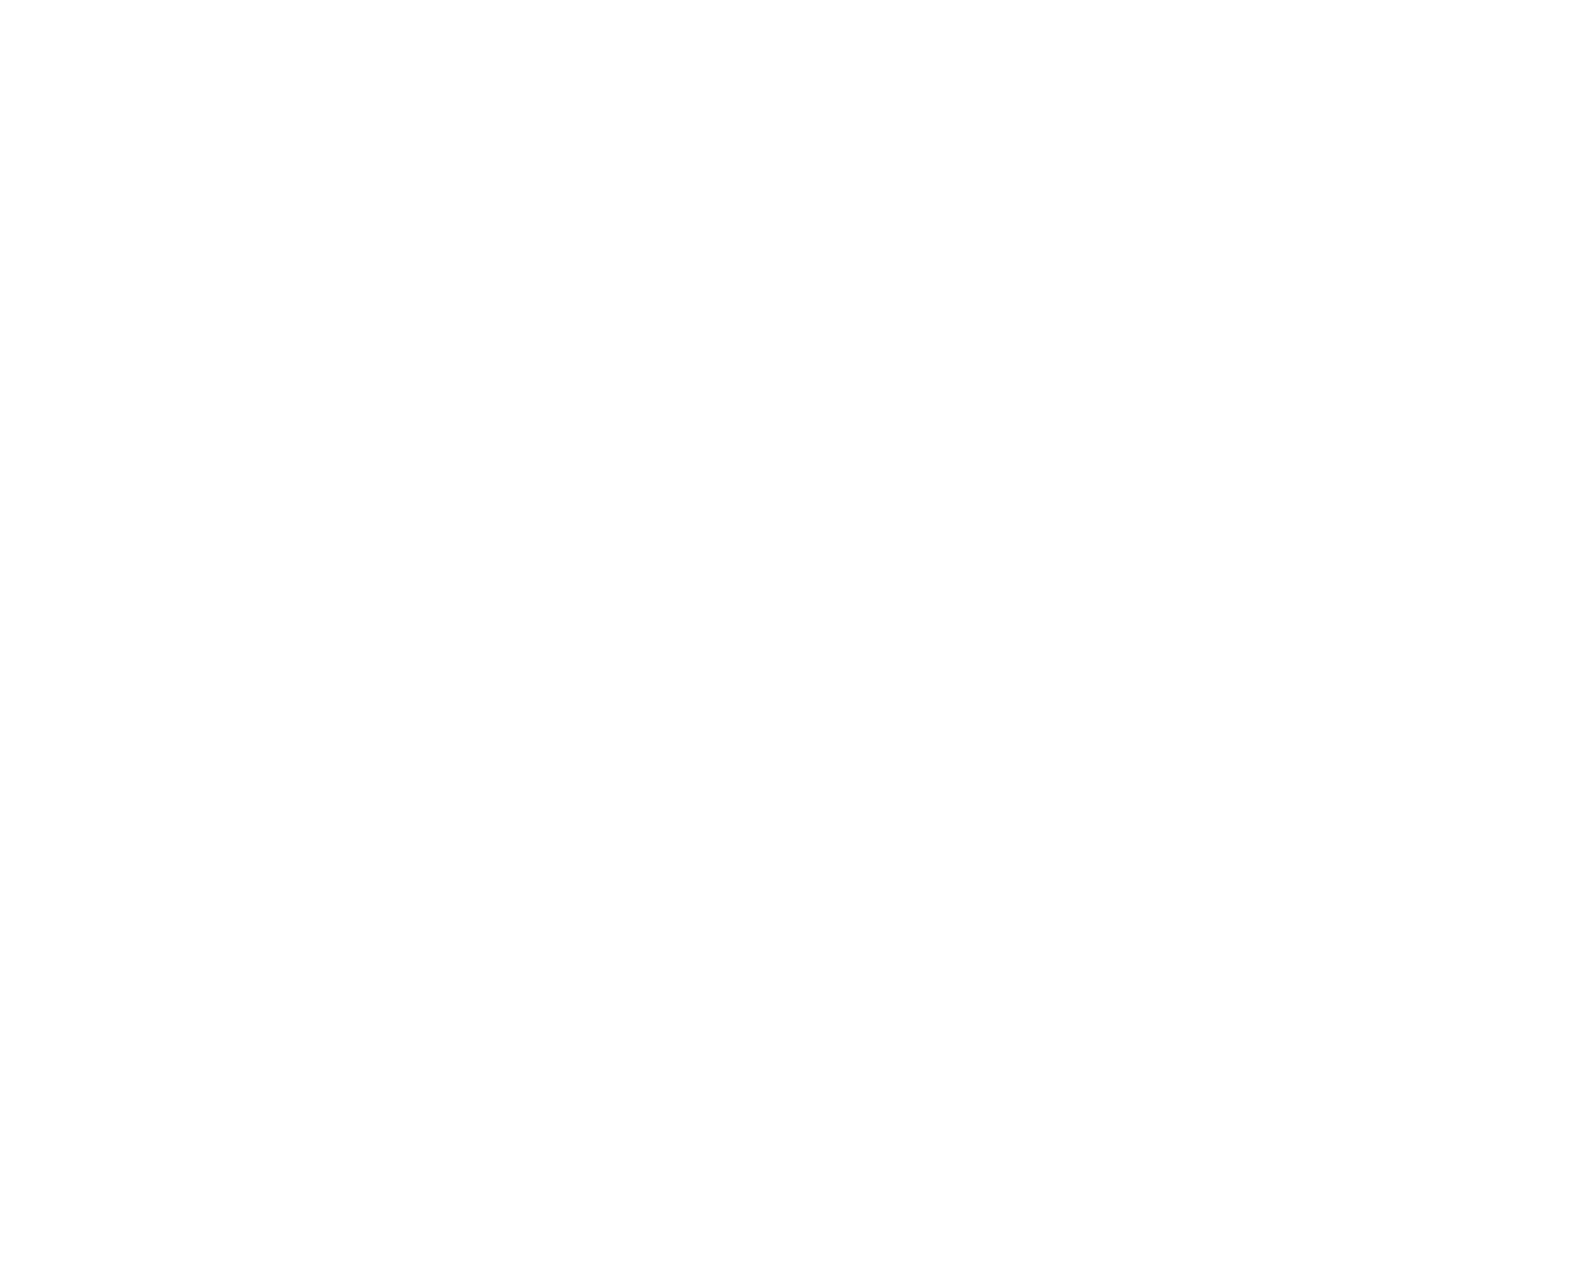 Noodles & Company logo for dark backgrounds (transparent PNG)